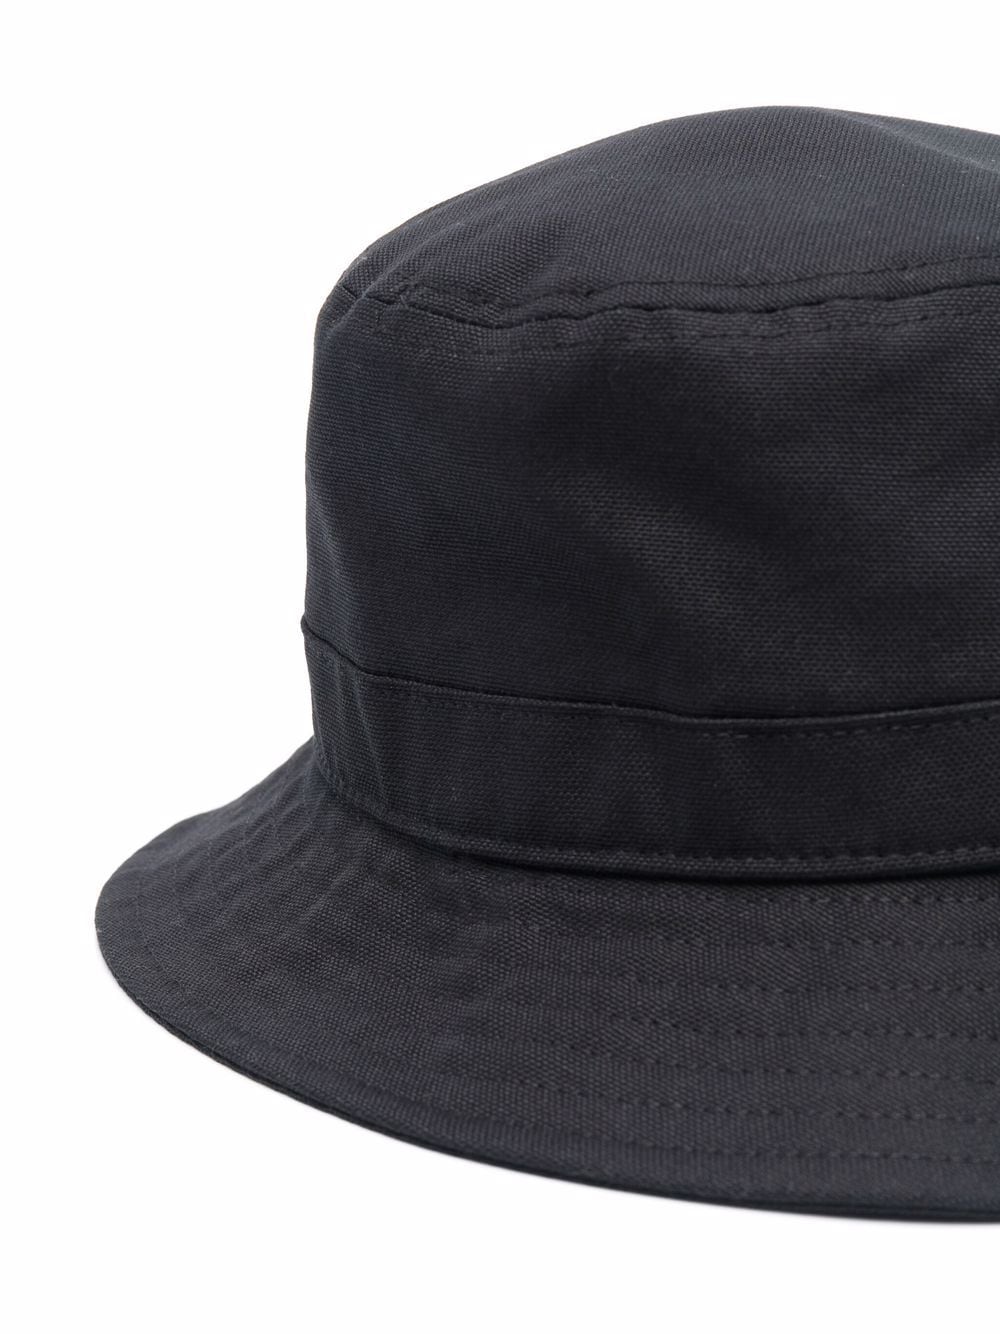 Shop Carhartt Men's Cotton Bucket Hat